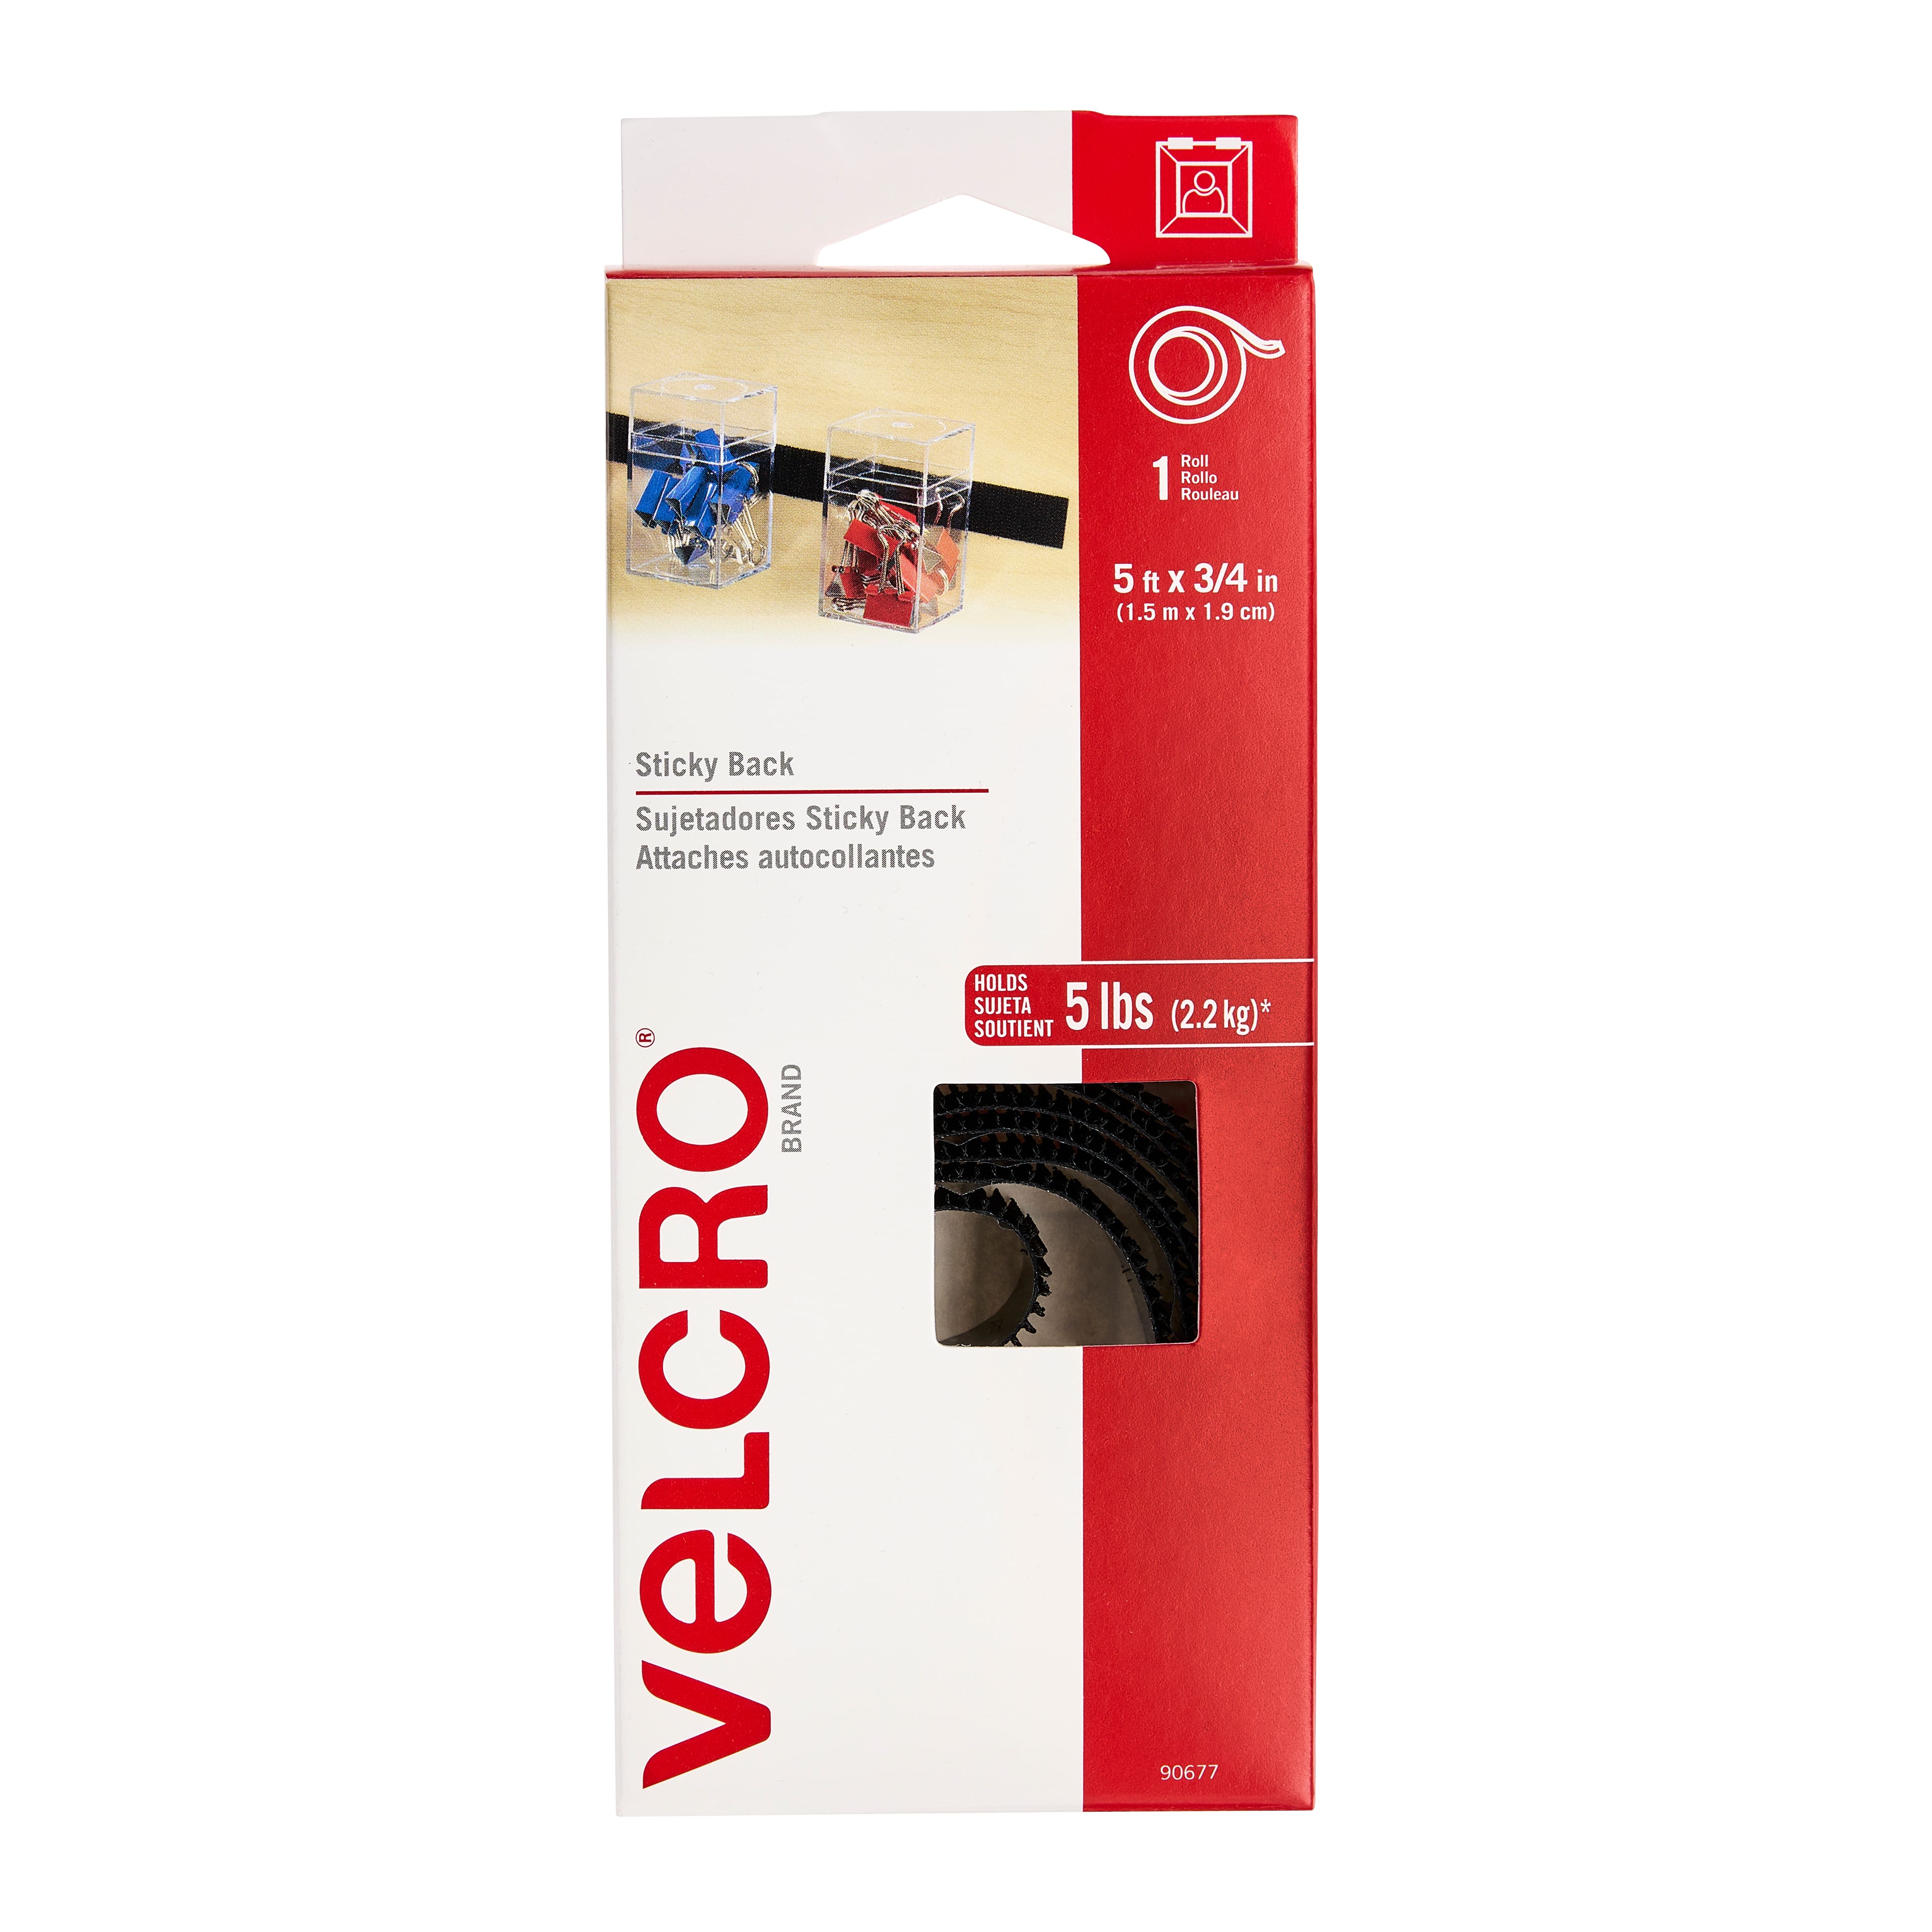 VELCRO Brand - Sticky Back Tape Bulk Roll, 50 ft x 3/4 in